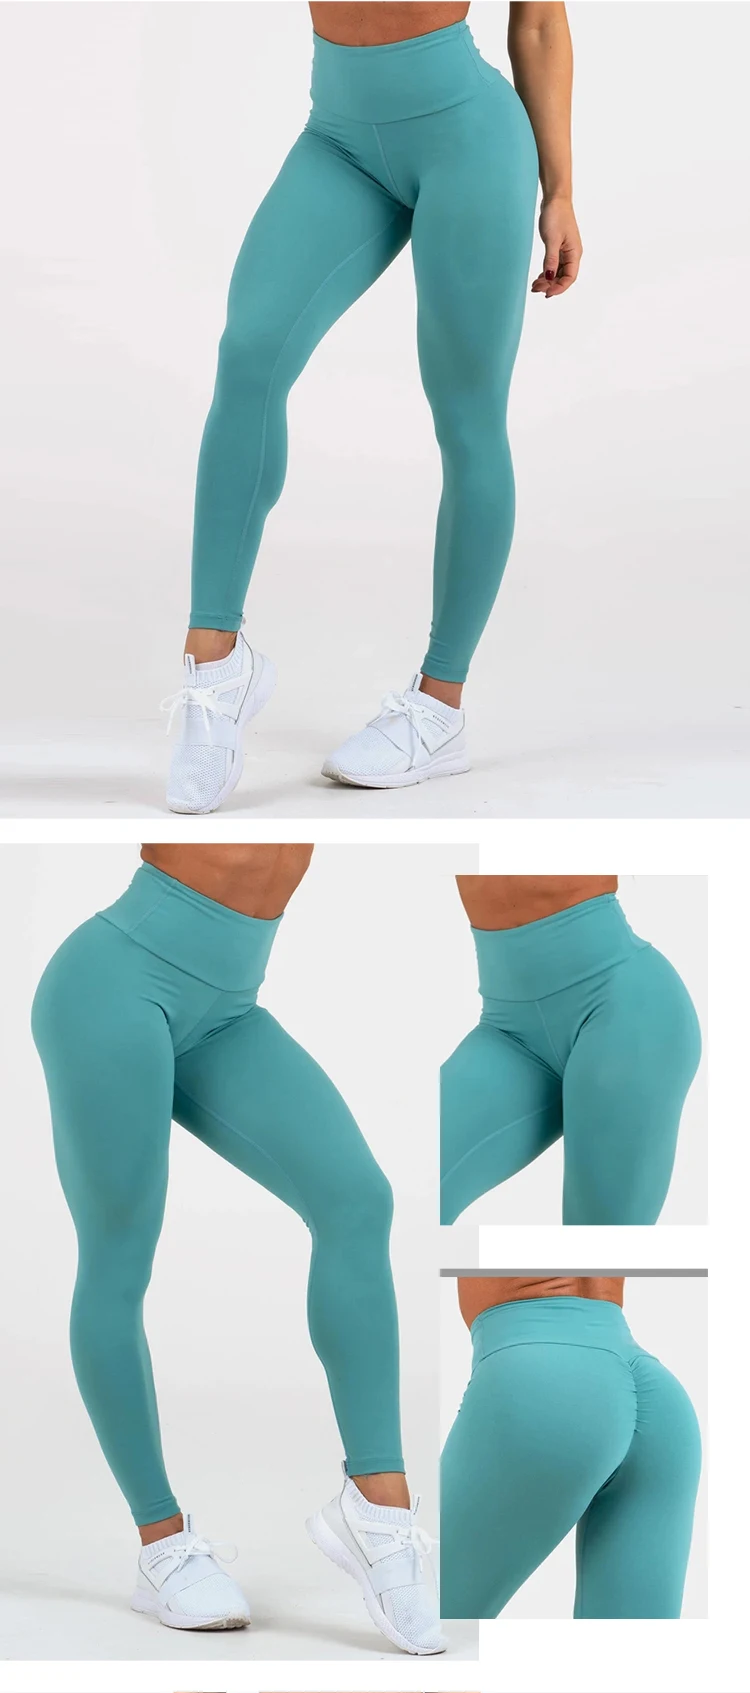 Try Sportswear Scrunch Bum Booty Ladies Nude Leggings Butt Lift Yoga